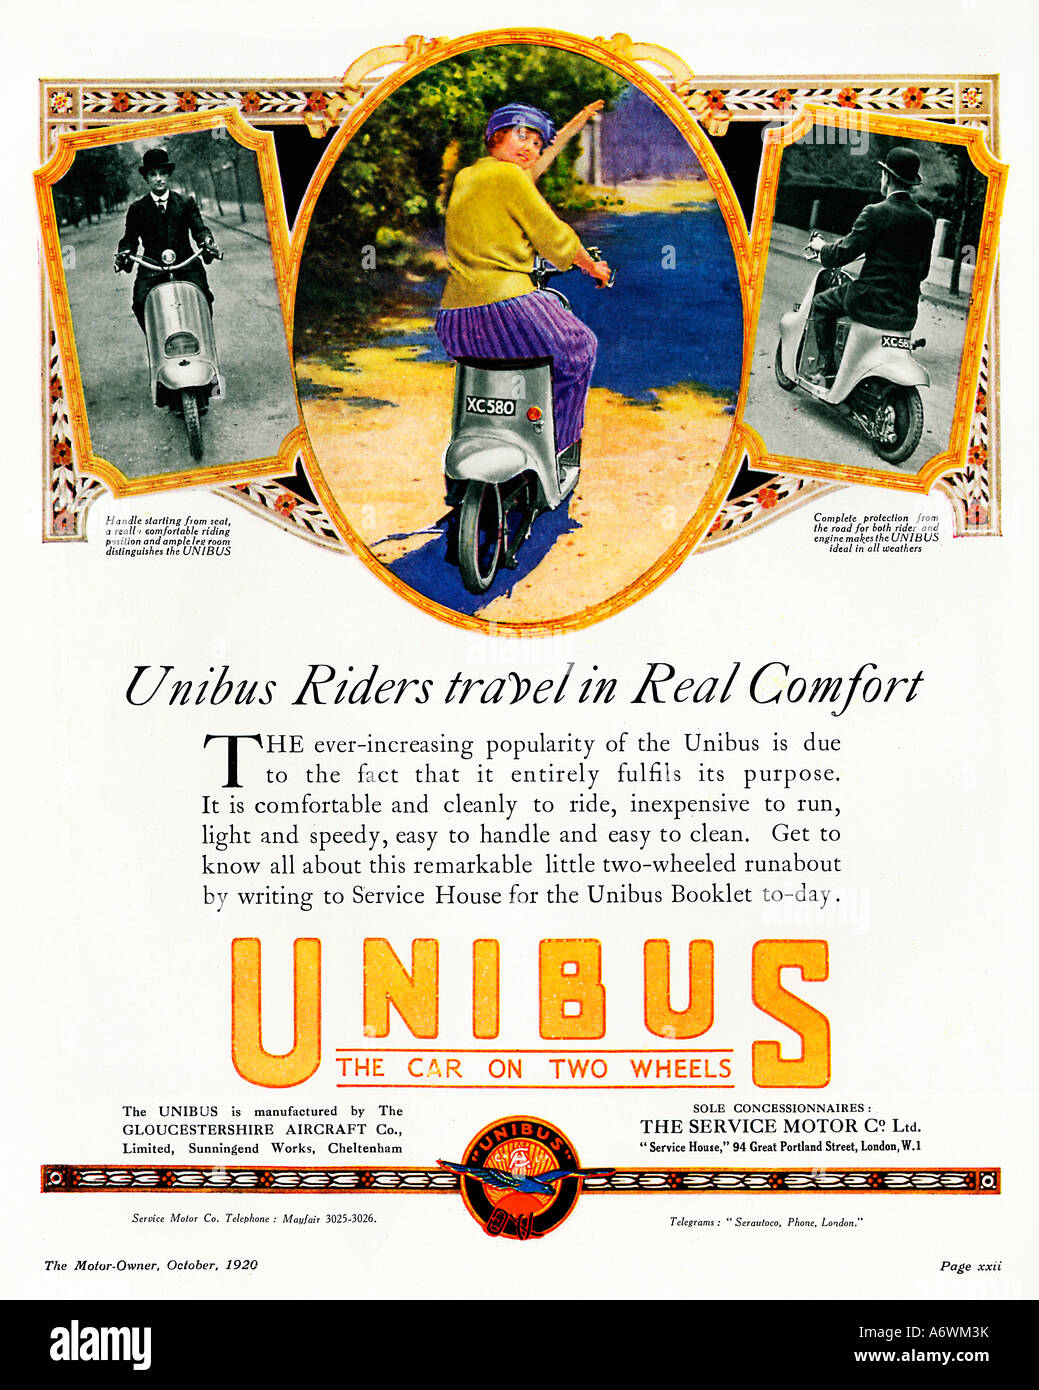 Unibus 1920 magazine annuncio pubblicitario per un early British scooter realizzato dall'aeromobile Gloucestershire Co in Cheltenham Foto Stock